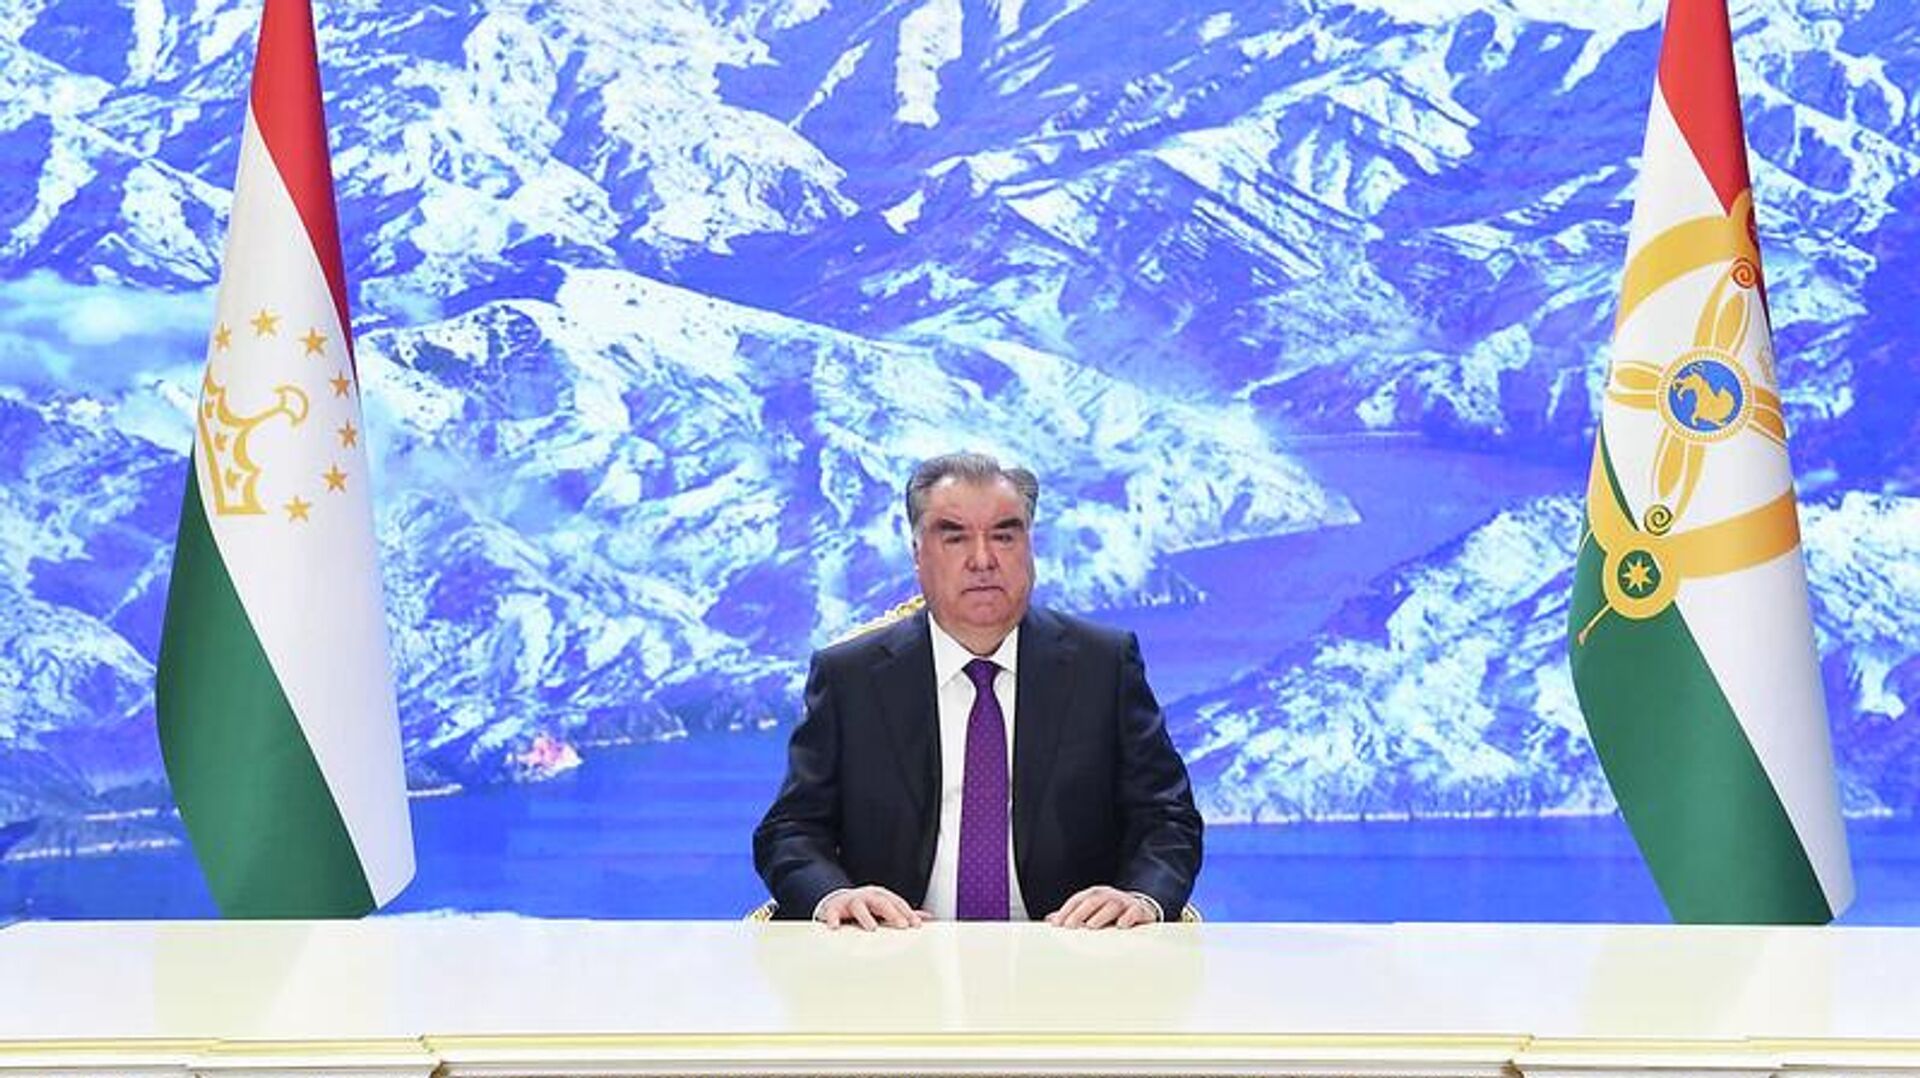 Президент Таджикистана Эмомали Рахмон выступил на церемонии открытия четвертого Азиатско-Тихоокеанского водного саммита - Sputnik Тоҷикистон, 1920, 09.05.2022